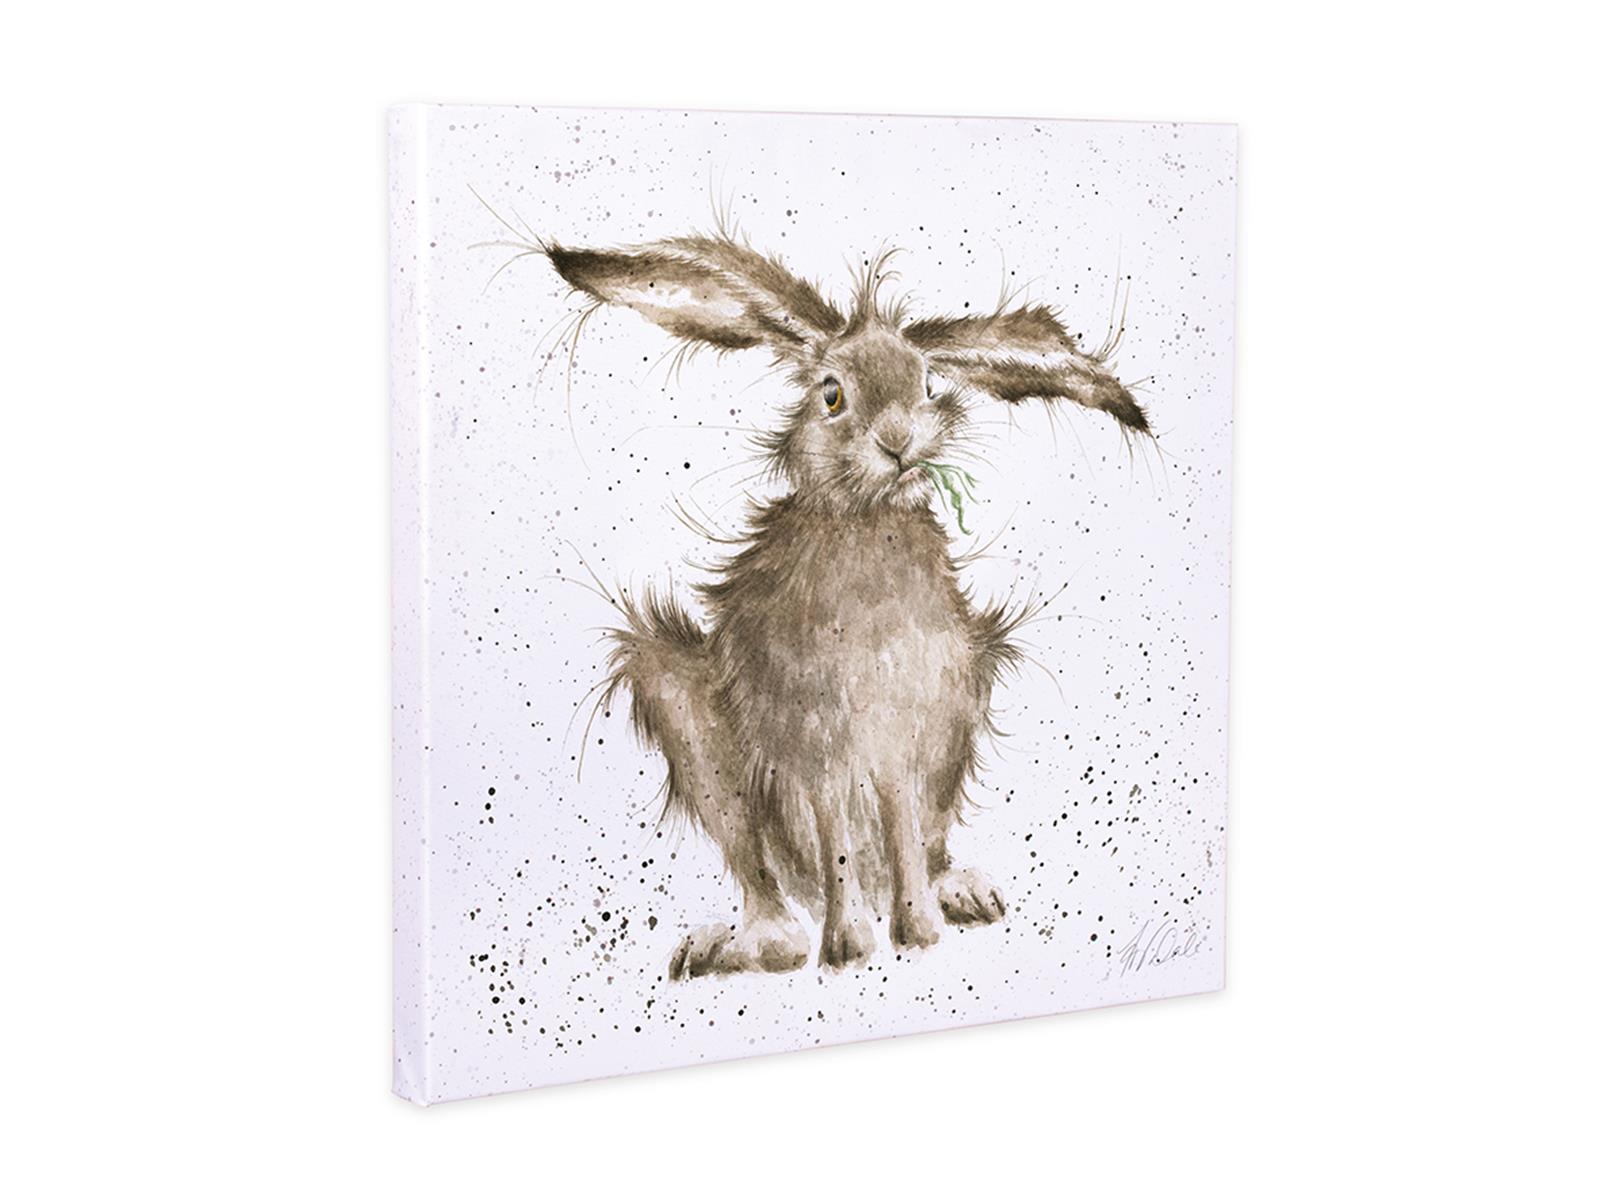 Wrendale Leinwand medium, Aufdruck Hase isst Gras,  "Hare-Brained", 50x50 cm